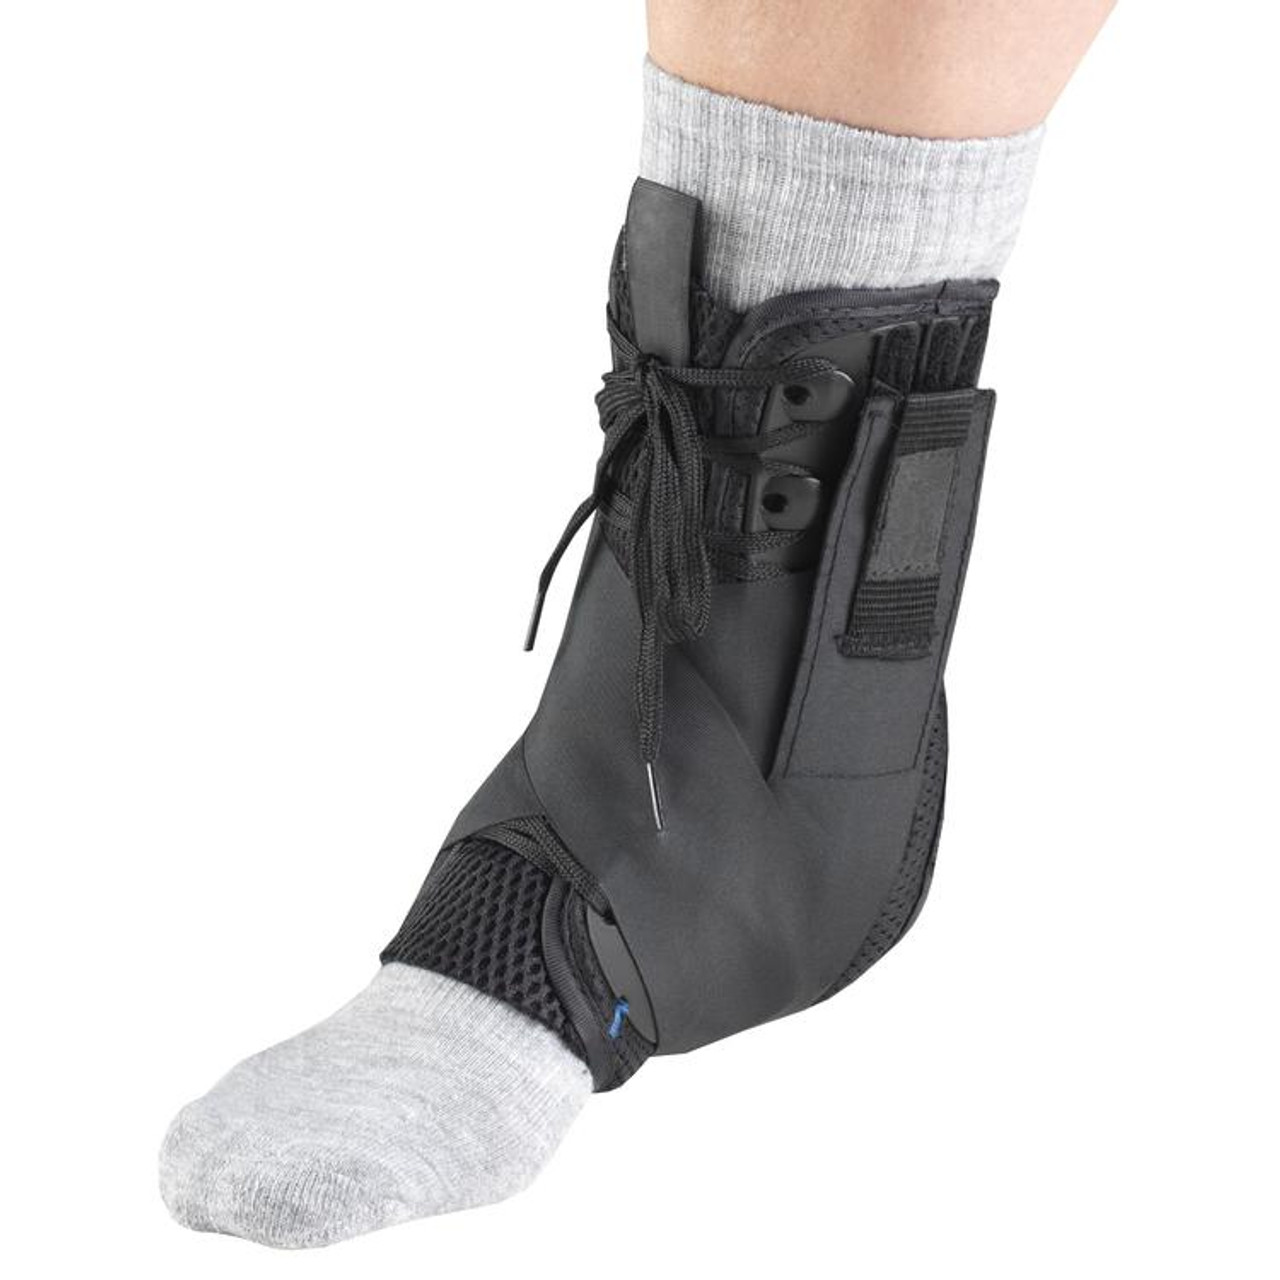 OTC 2376 Ankle Stabilizer w/Exoskeleton & Straps